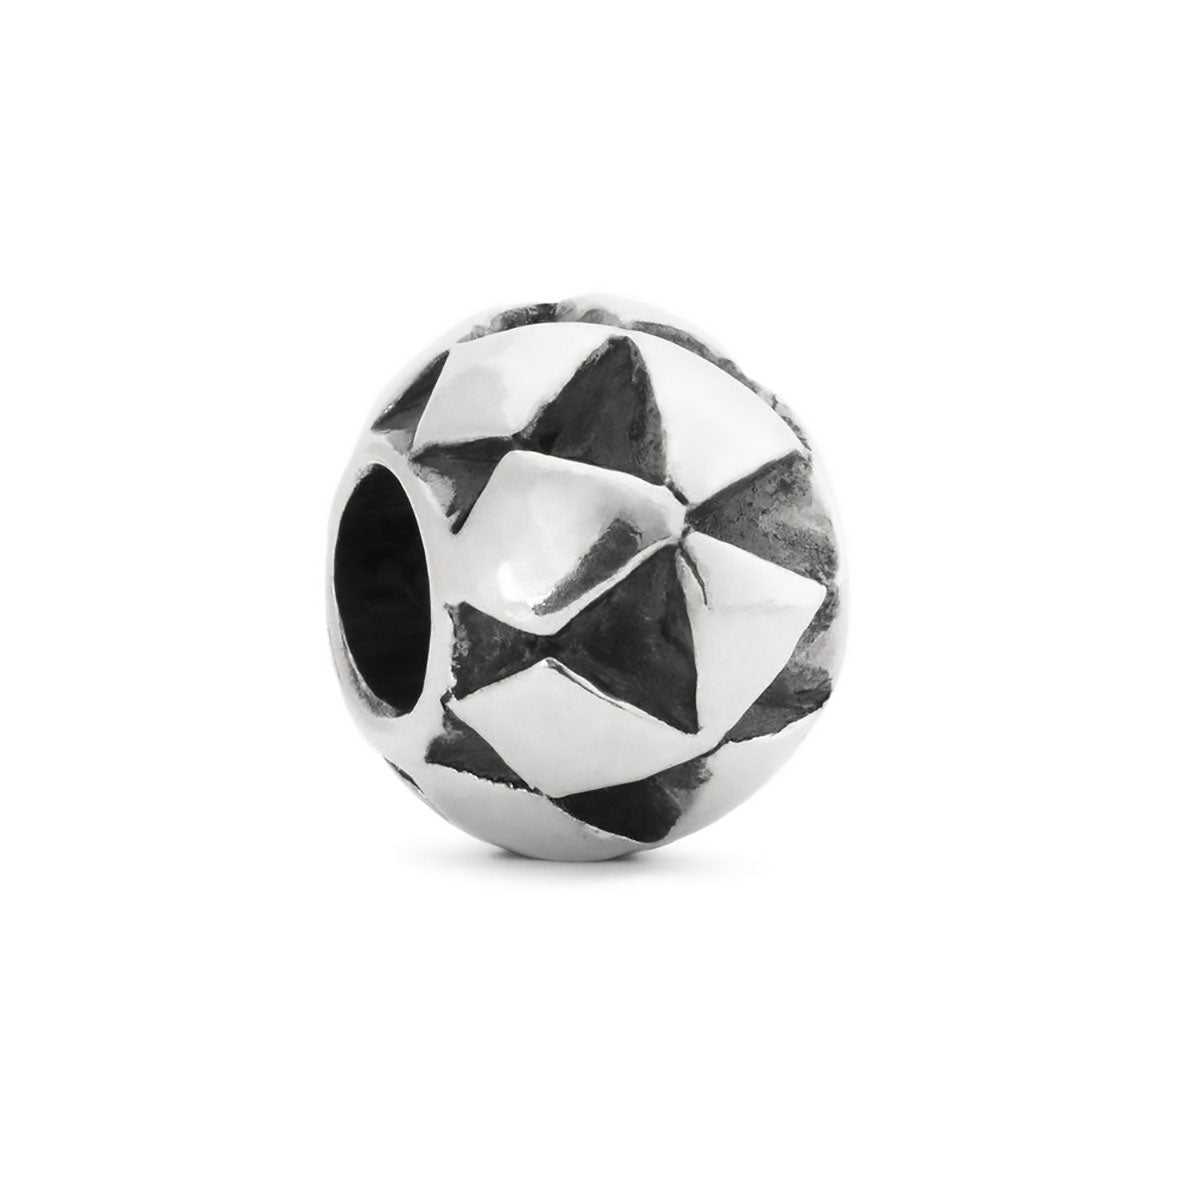 Il beads in argento Cuscino Etnico ha una forma a sfera ed è impreziosita da ornamenti a rombo e triangolo fatti a mano.